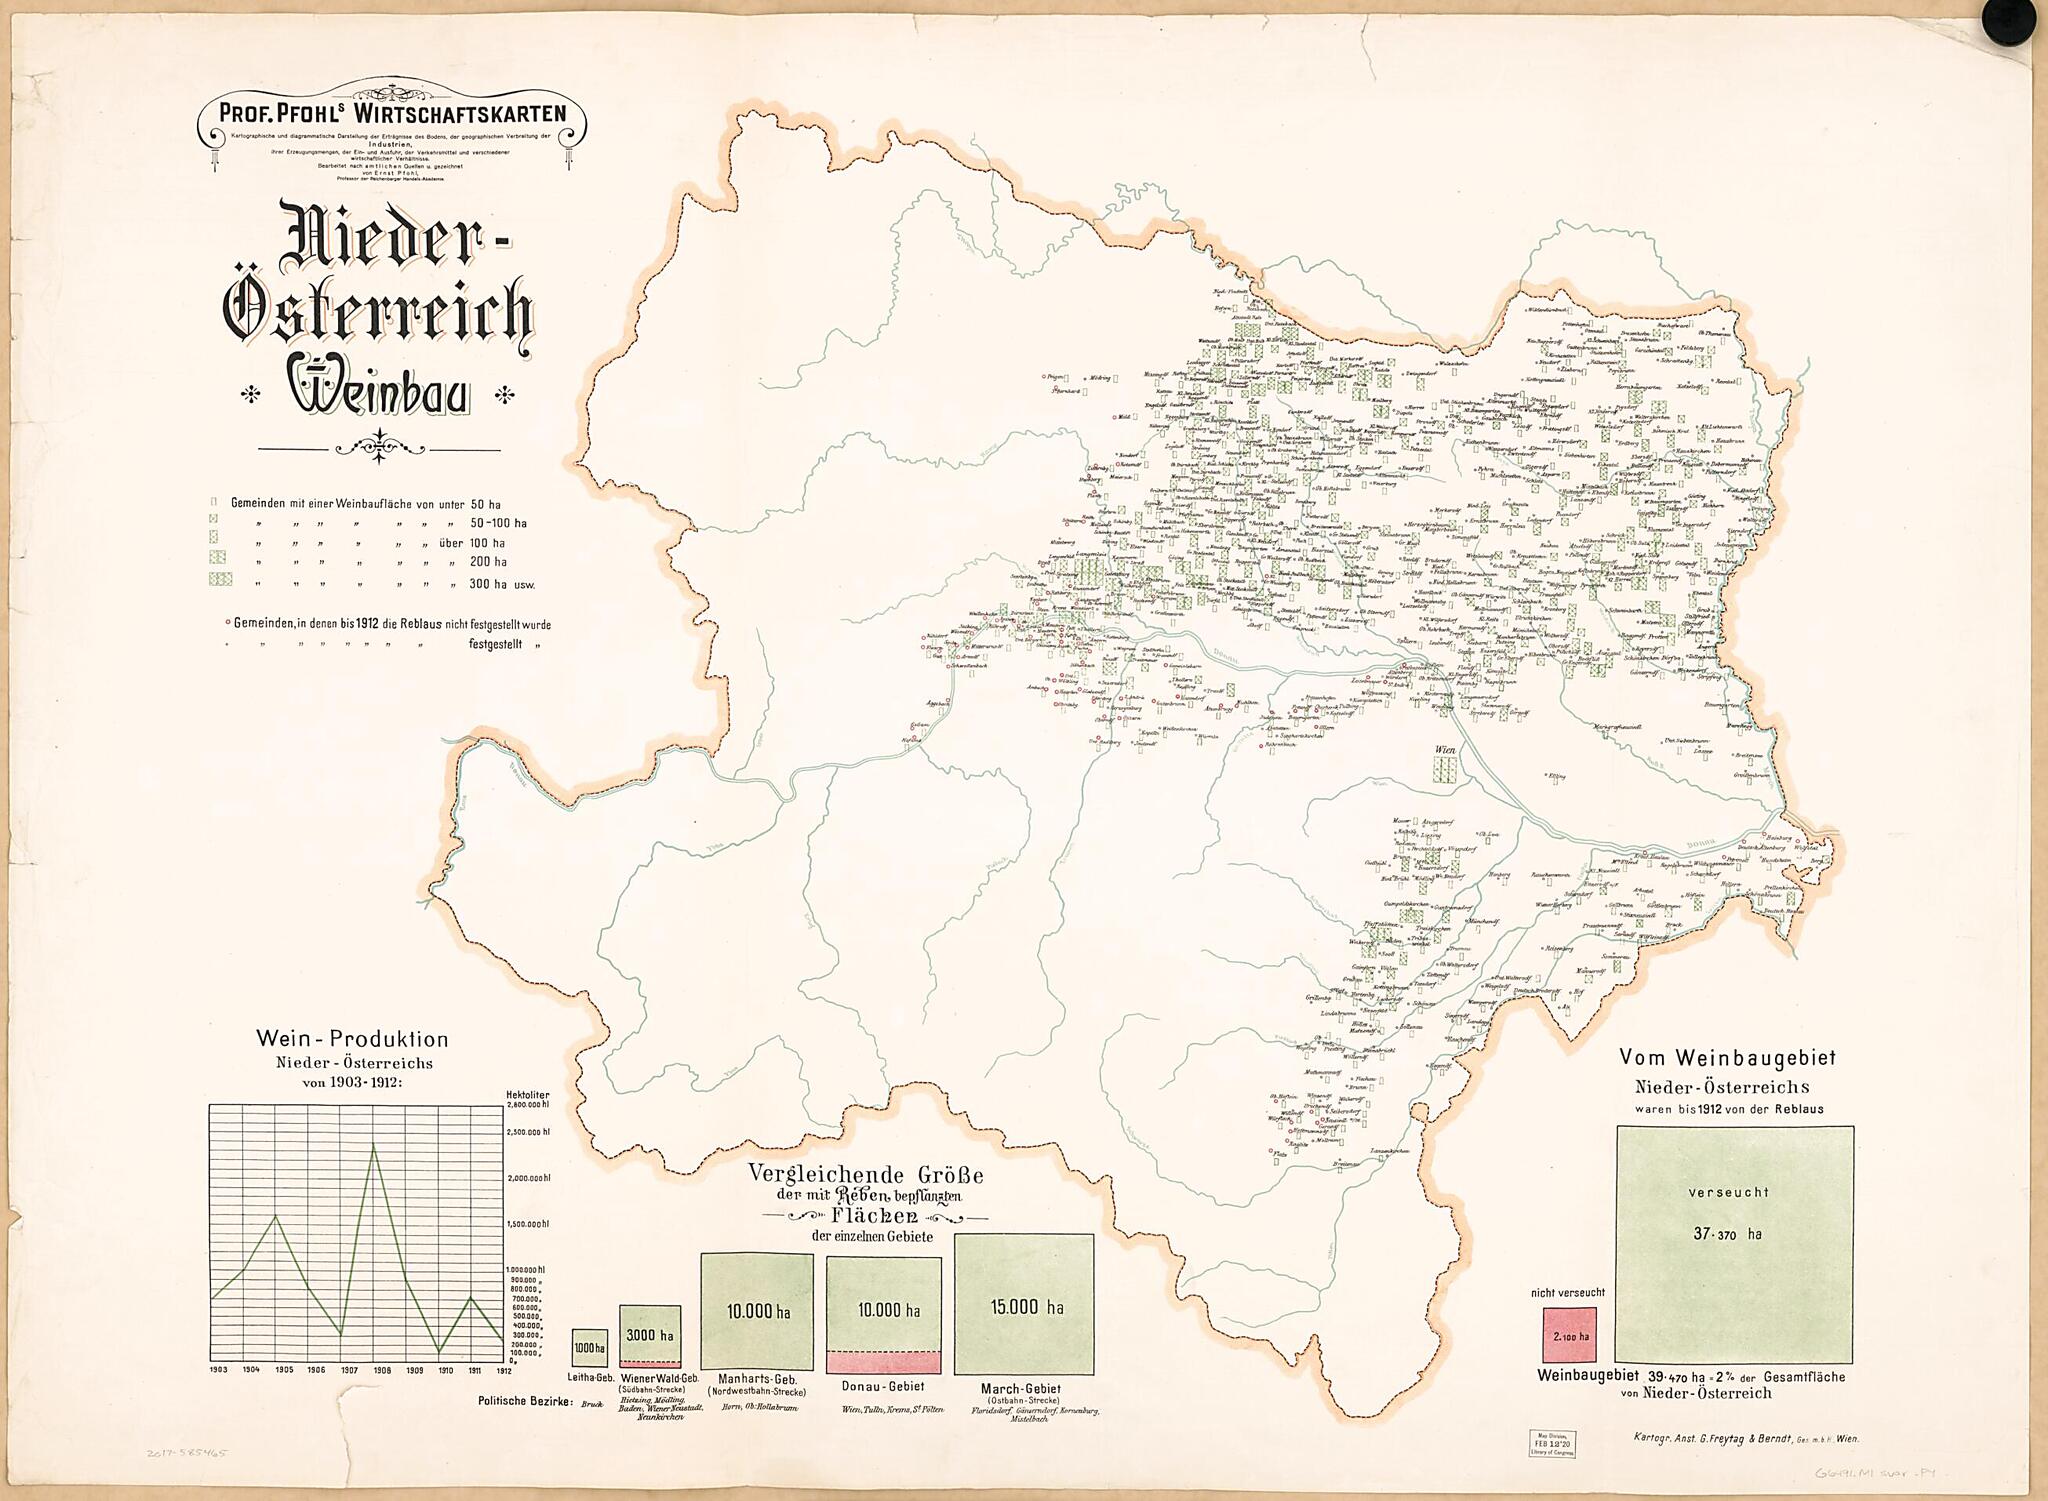 This old map of Nieder-Osterrreich Weinbau from Prof. Pfohls Wirtschaftskarten from 1913 was created by Ernst Pfohl in 1913